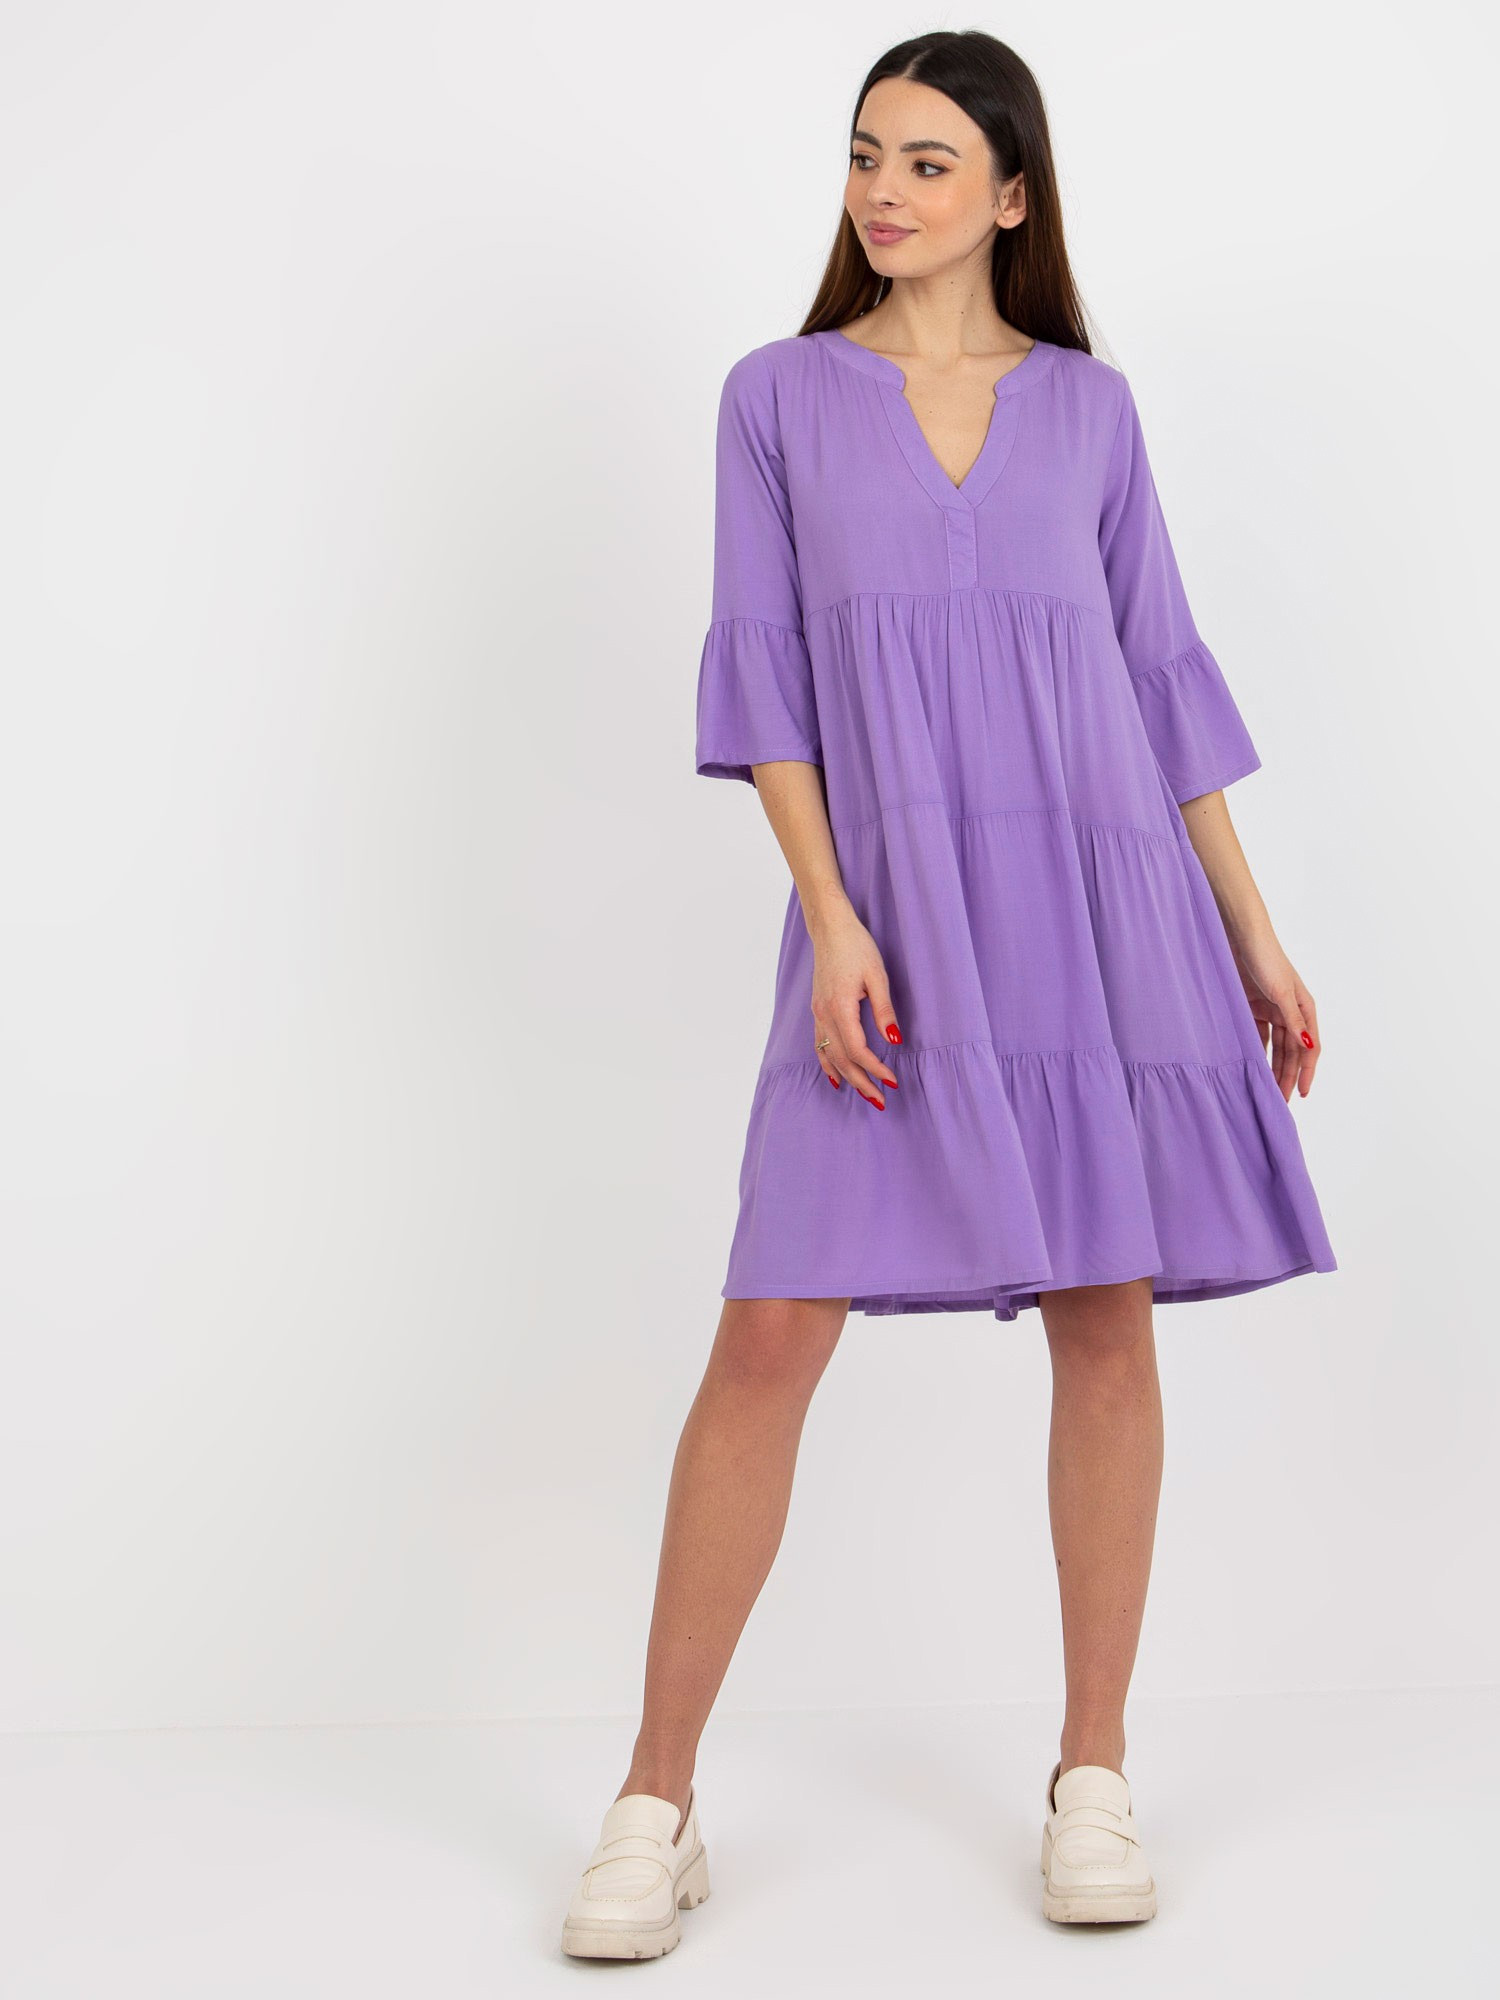 Dámské šaty D73761M30214B fialové - FPrice L